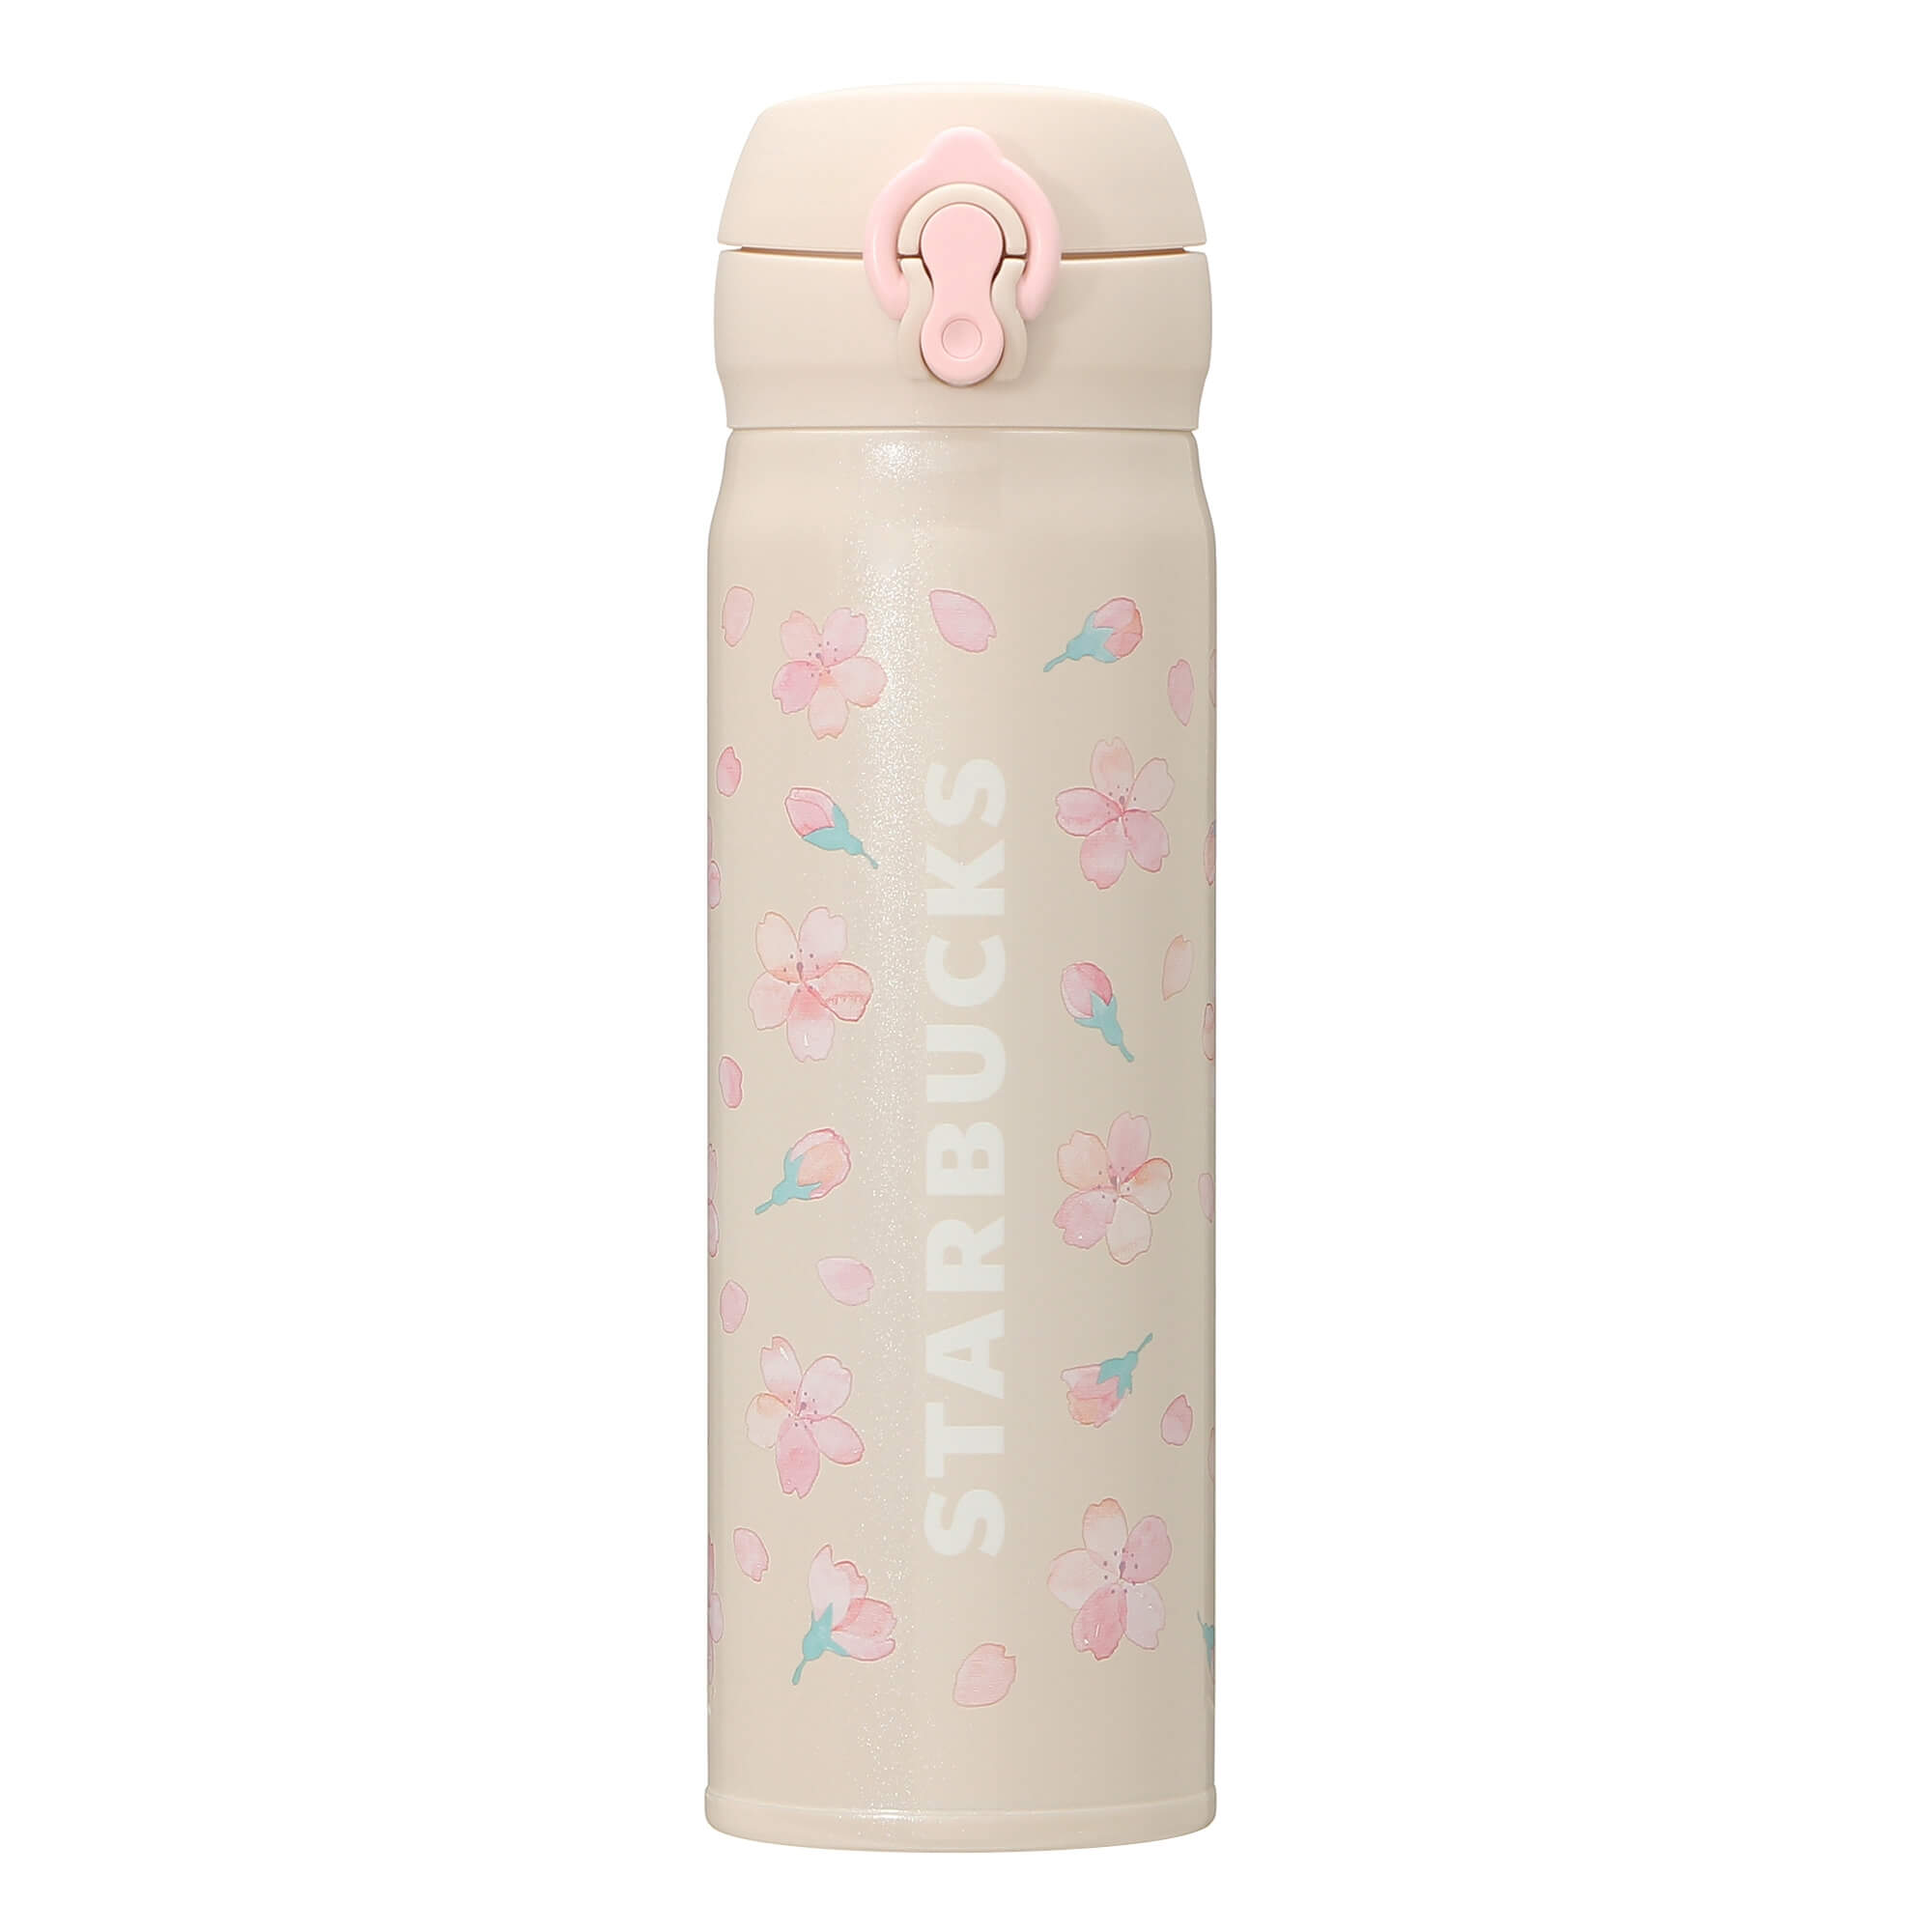 Starbucks Japan Sakura 2021 Handy Stainless Bottle Aerial